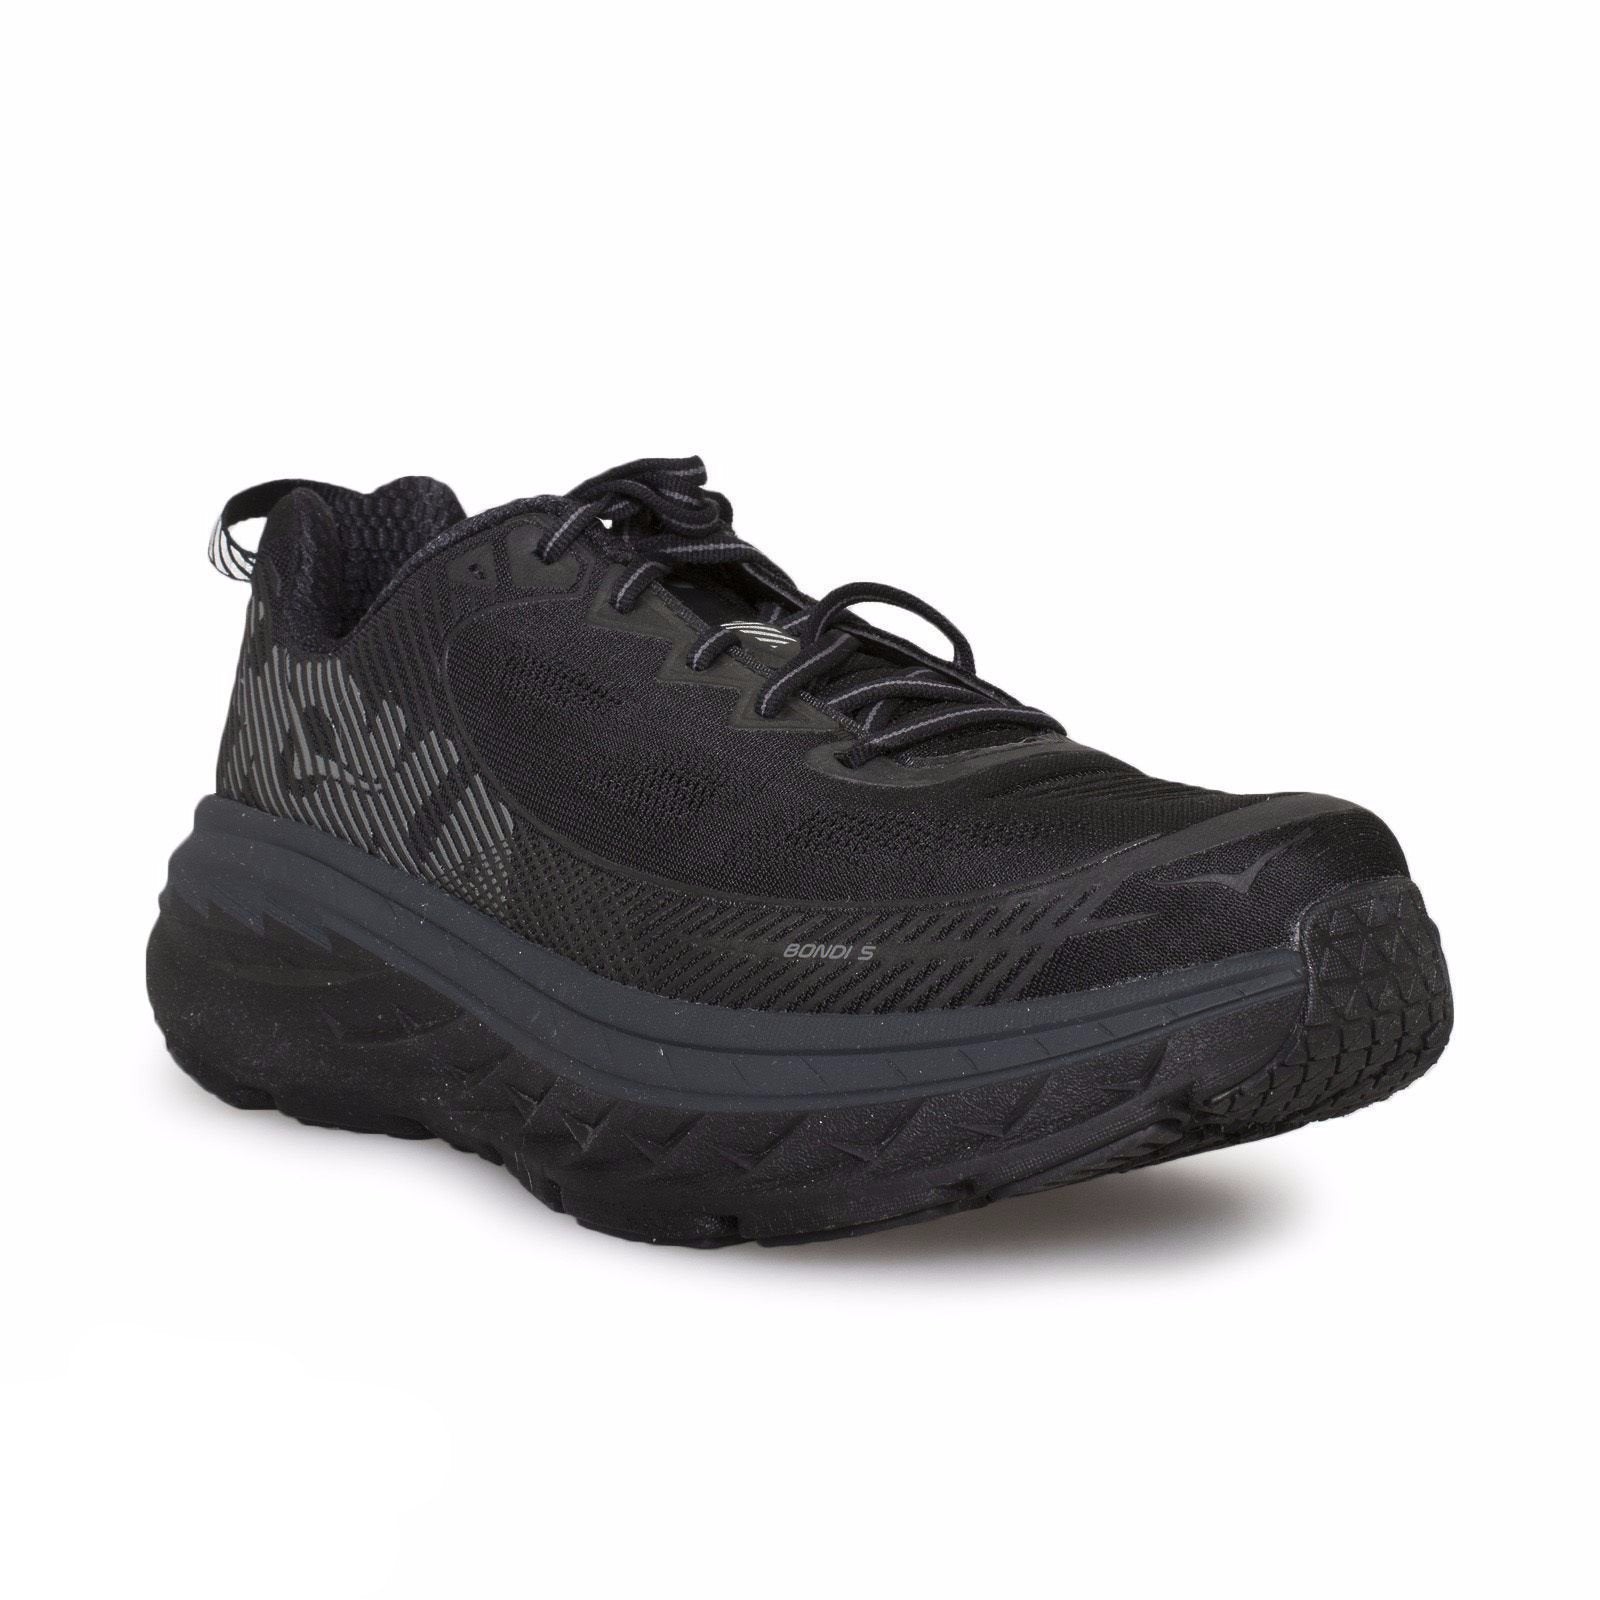 Hoka One One Bondi 5 Black Running Shoes - Women's - MyCozyBoots